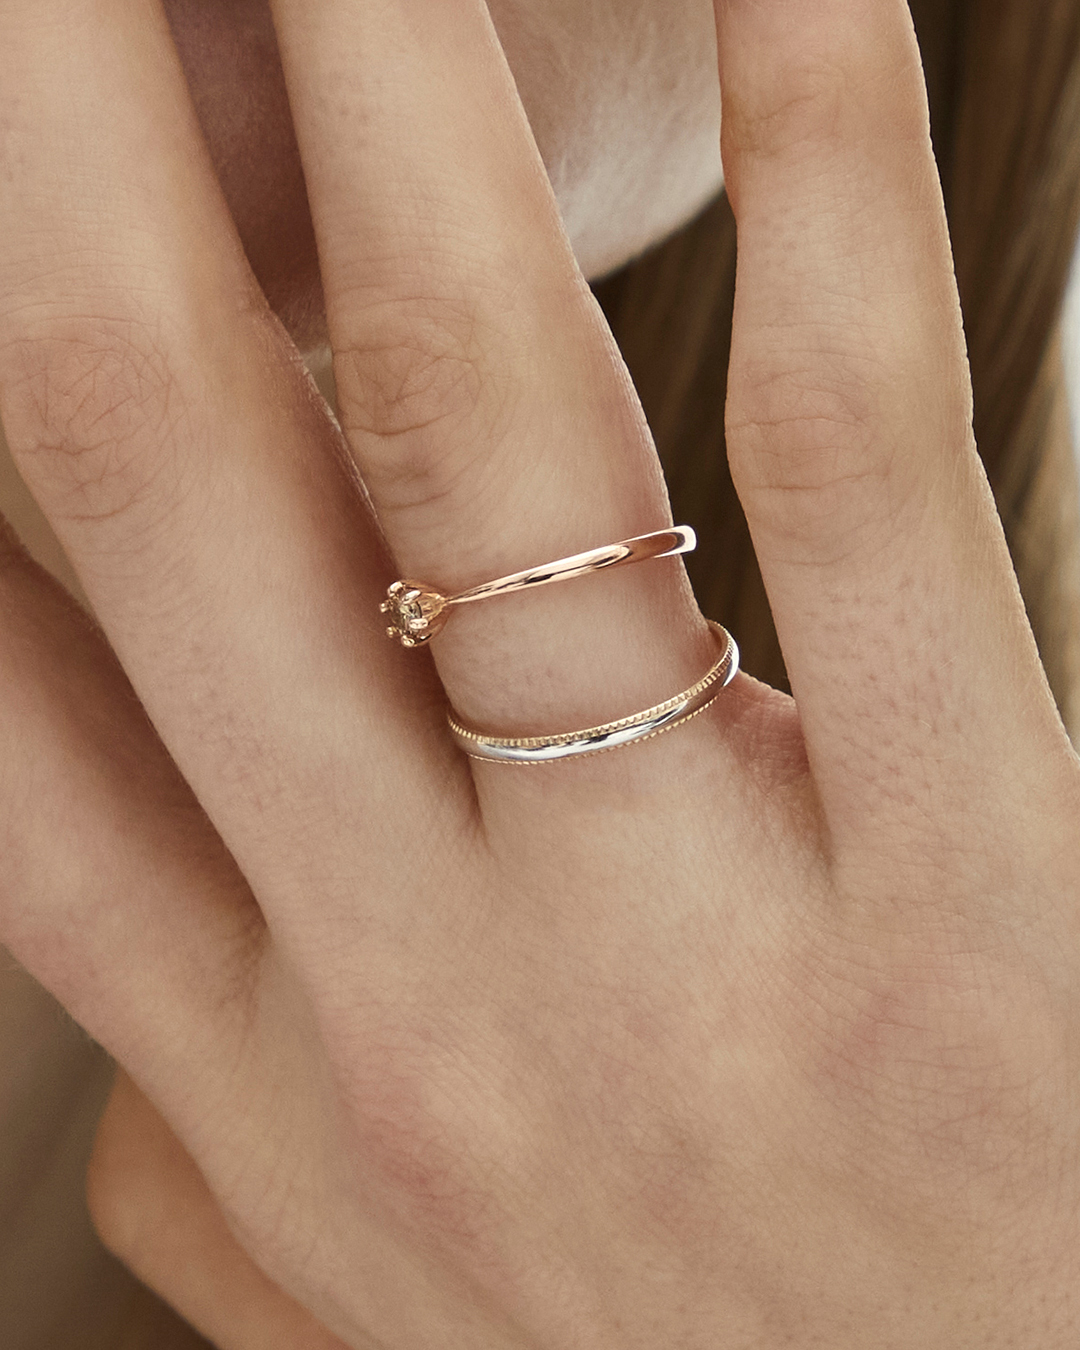 고급스럽고 세련된 디자인의 반지이다.